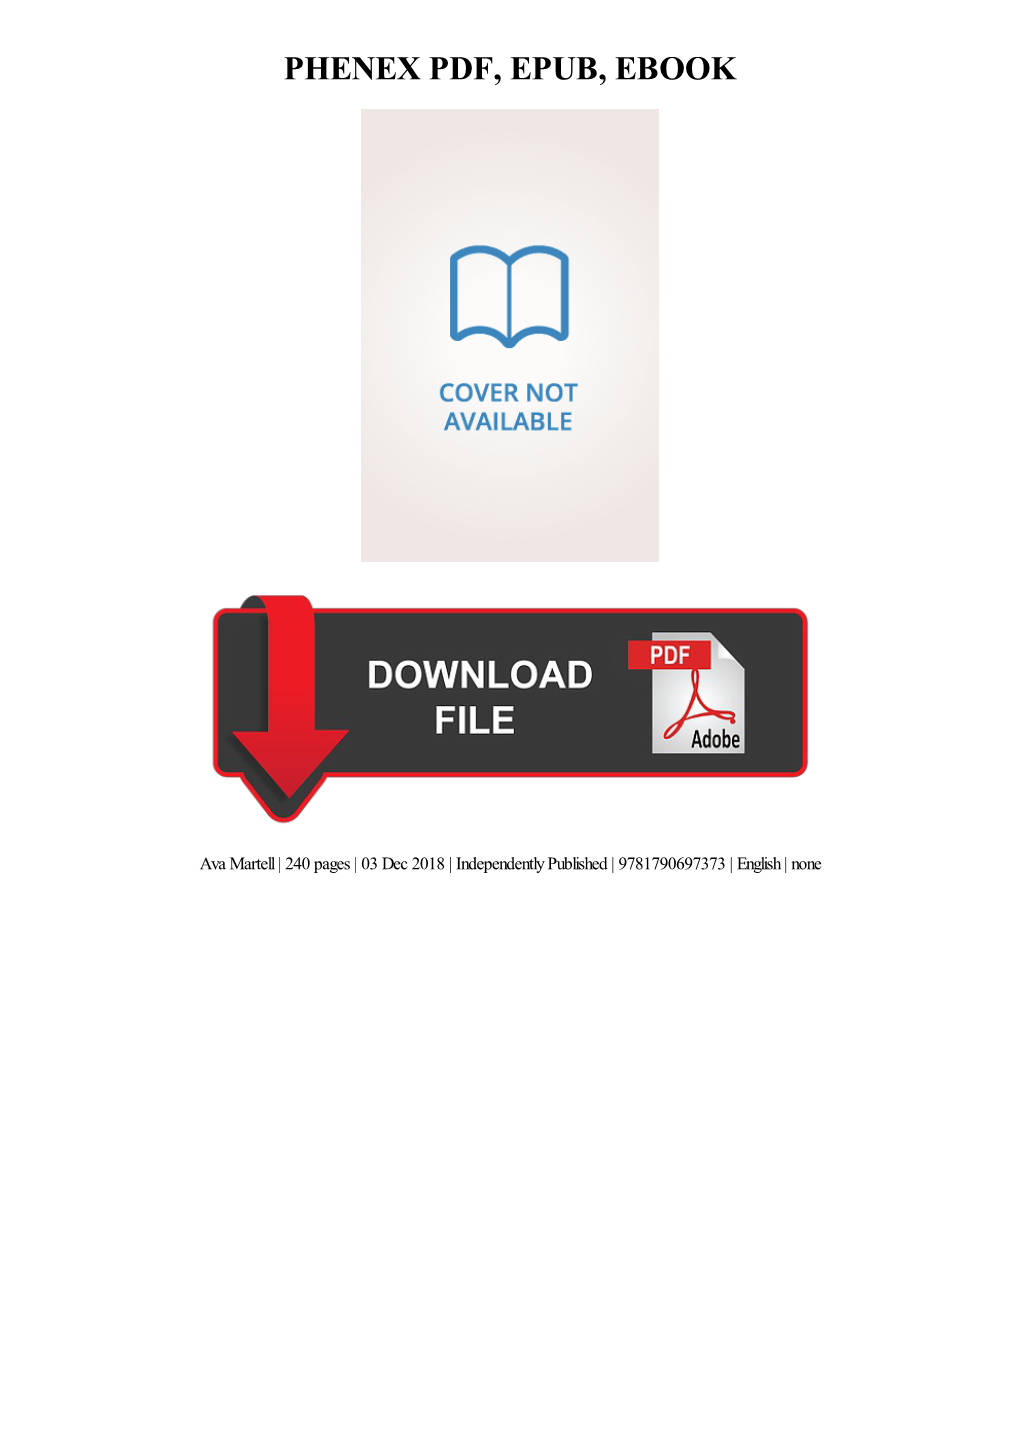 PDF Download Phenex Ebook Free Download